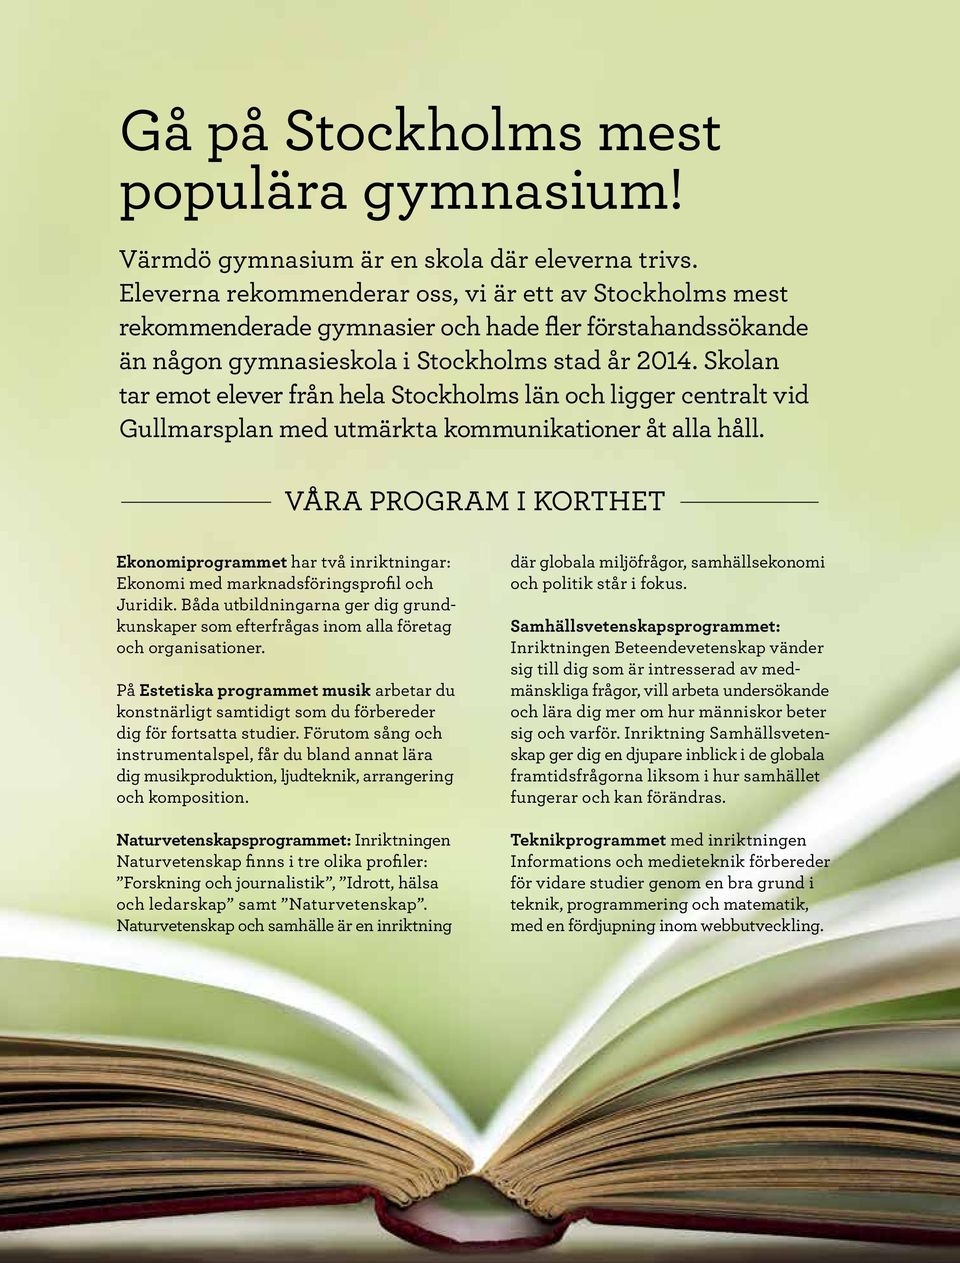 Skolan tar emot elever från hela Stockholms län och ligger centralt vid Gullmarsplan med utmärkta kommunikationer åt alla håll.